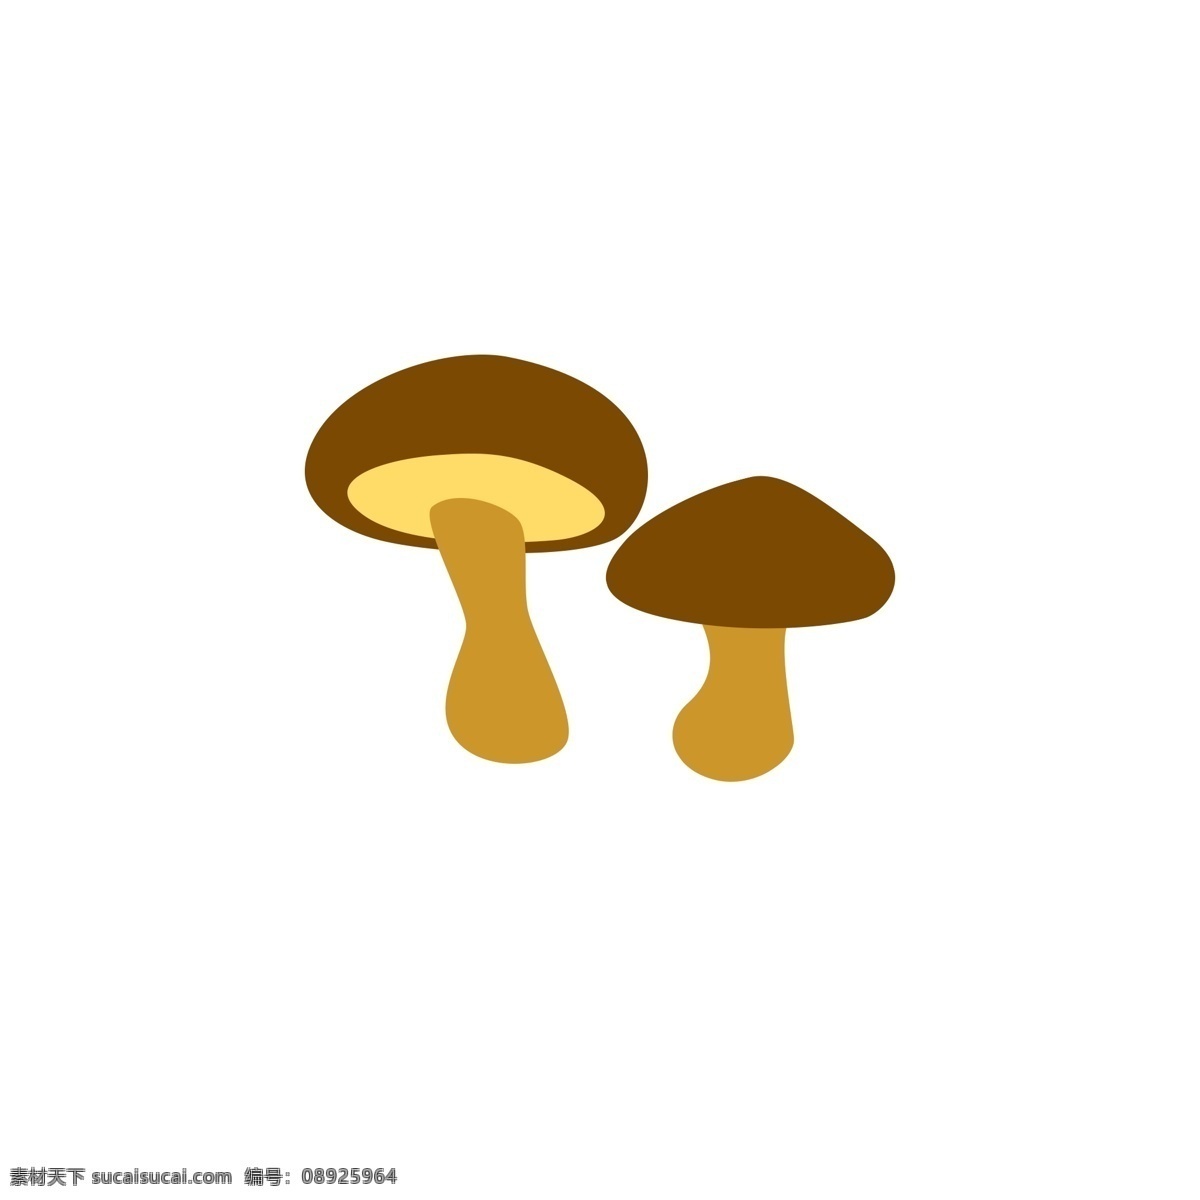 两 朵 小 蘑菇 鲜 美味 食品 好吃 菜肴 宴席 食物